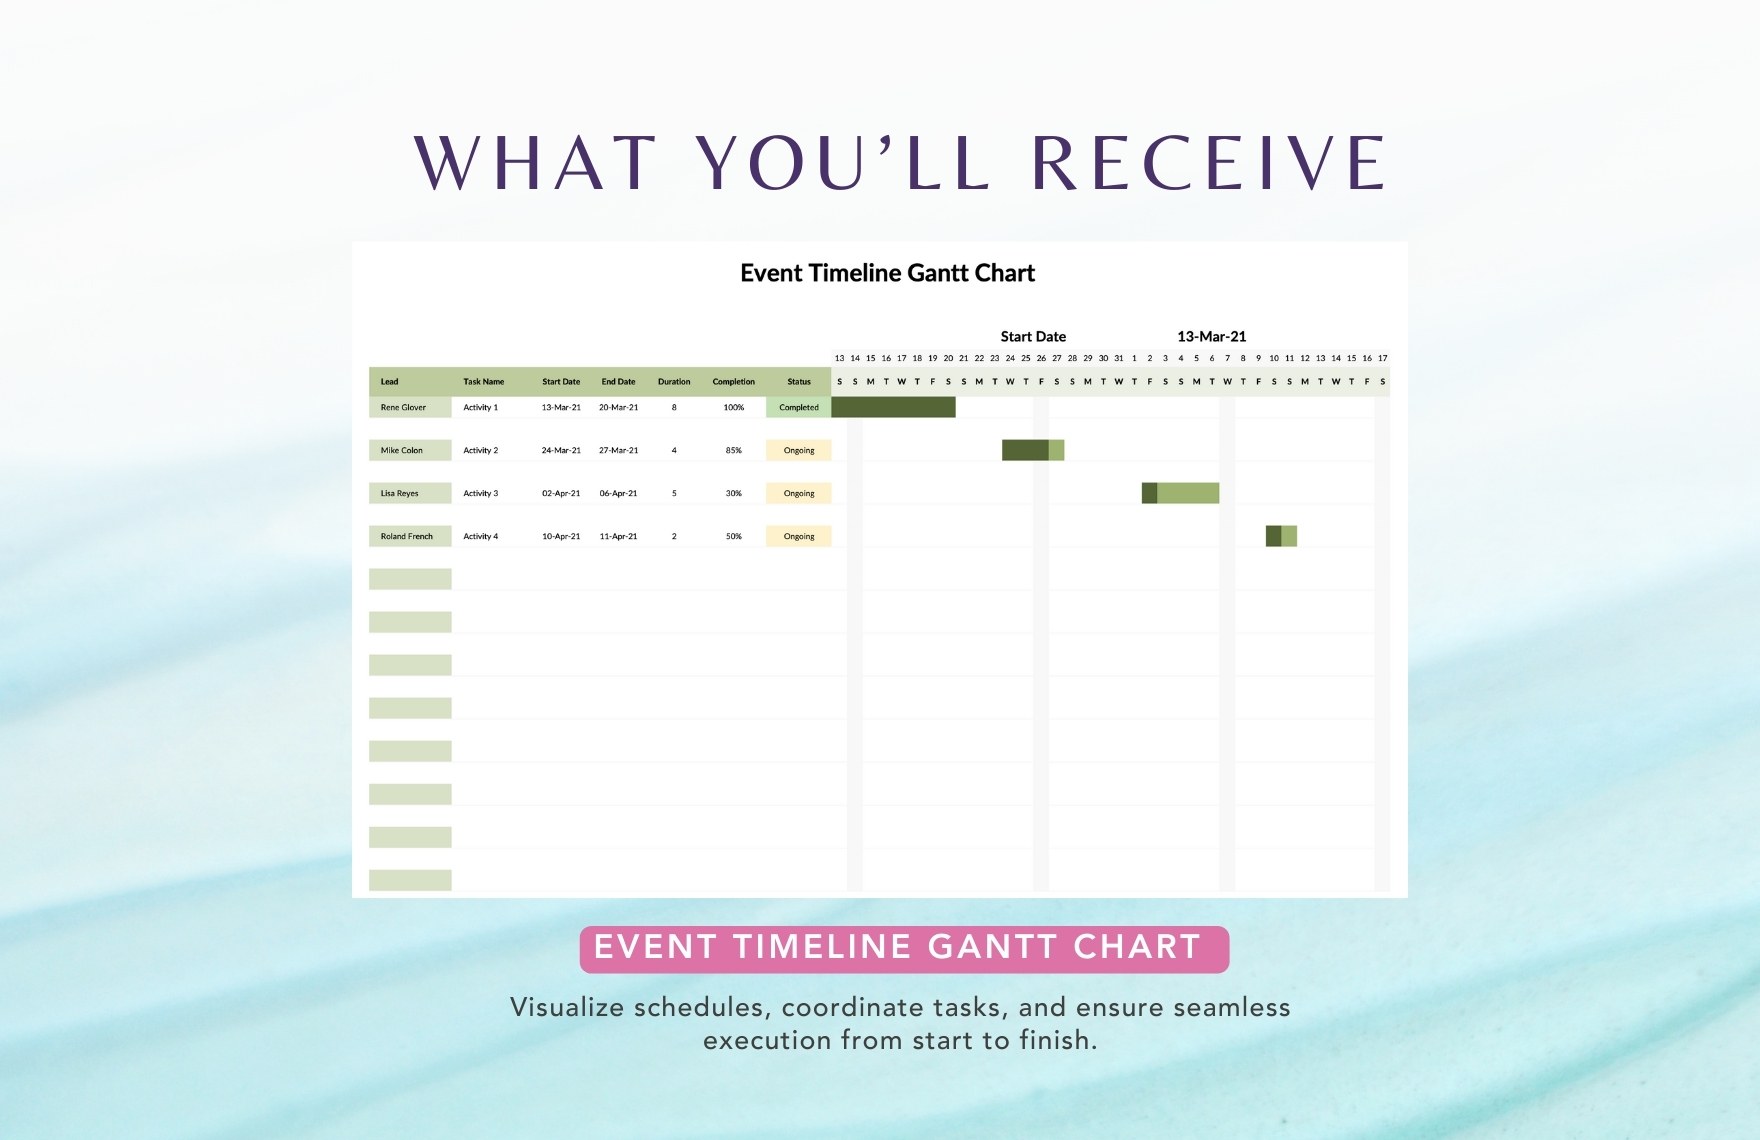 Event Timeline Gantt Chart Template